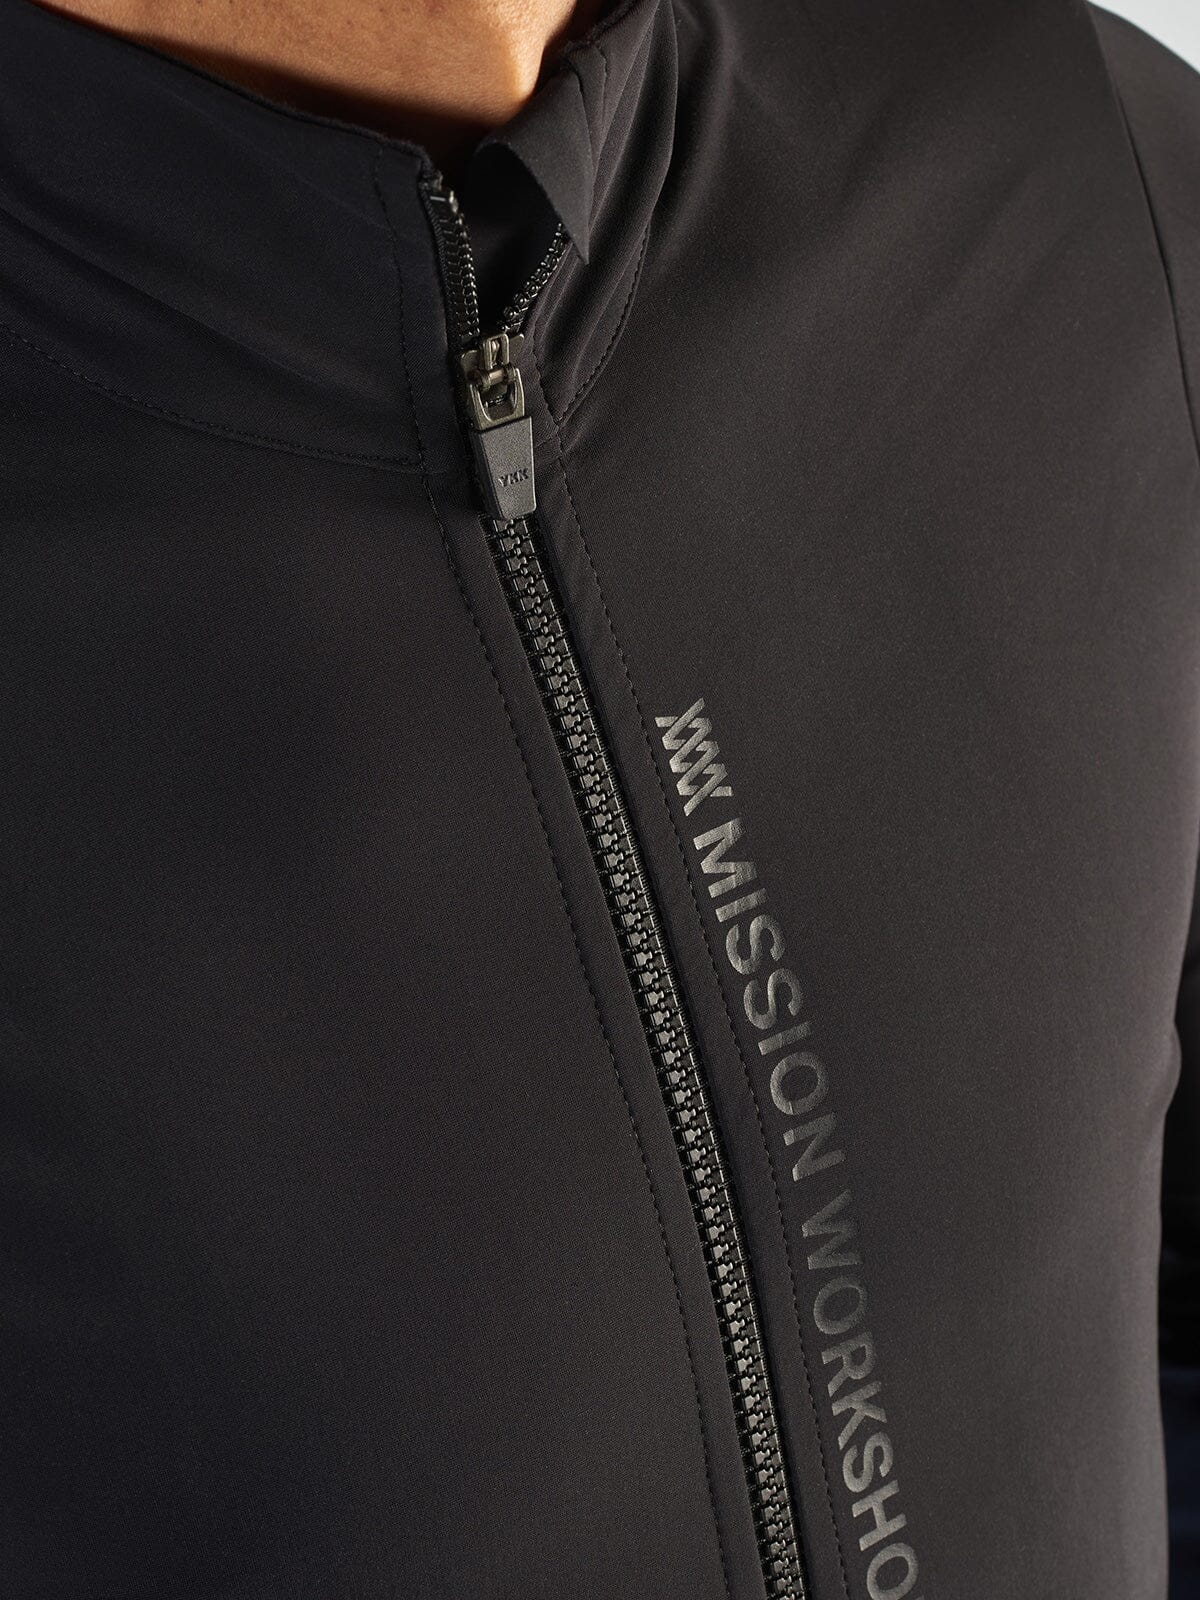 Range Jacket Men's by Mission Workshop - Weerbestendige tassen & technische kleding - San Francisco & Los Angeles - Gemaakt om te weerstaan - Voor altijd gegarandeerd